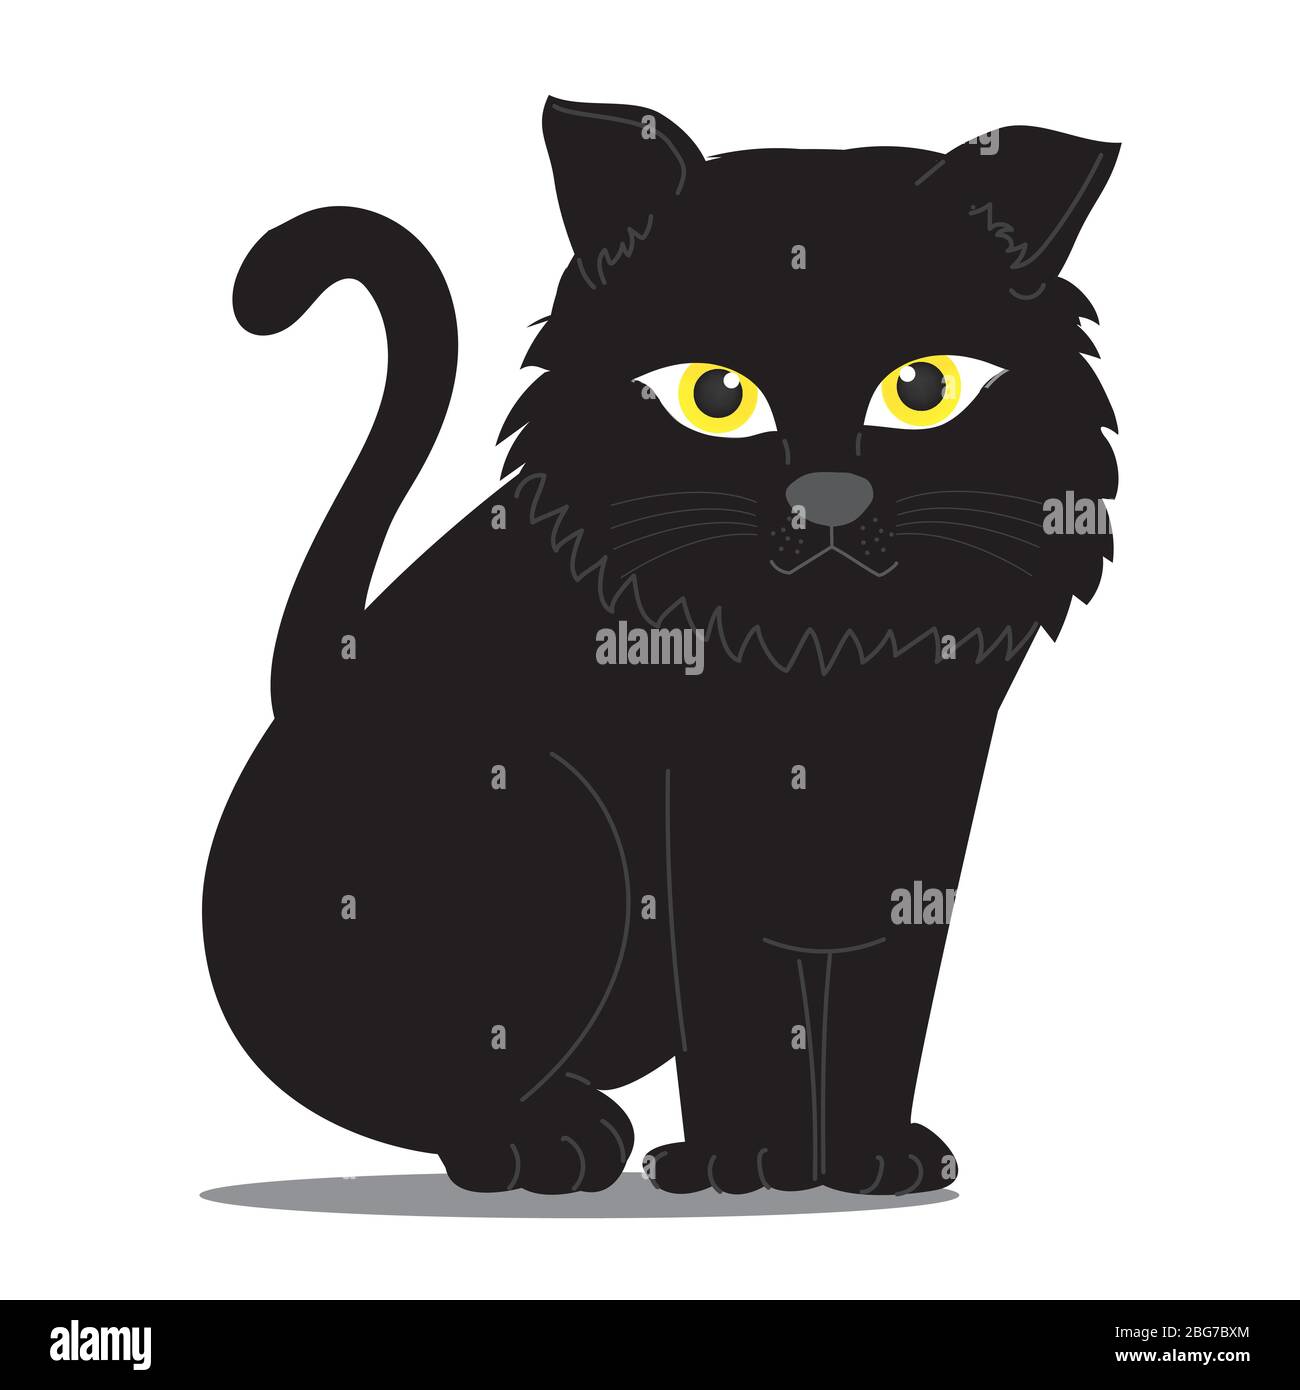 CAT Illustration Clipart. Eine schwarze Katze sitzt ihr gegenüber. Es hat gelbe Augen, die geheimnisvoll aussehen. Es ist auf einem weißen Hintergrund. Hand zeichnen Kunst Stock Vektor